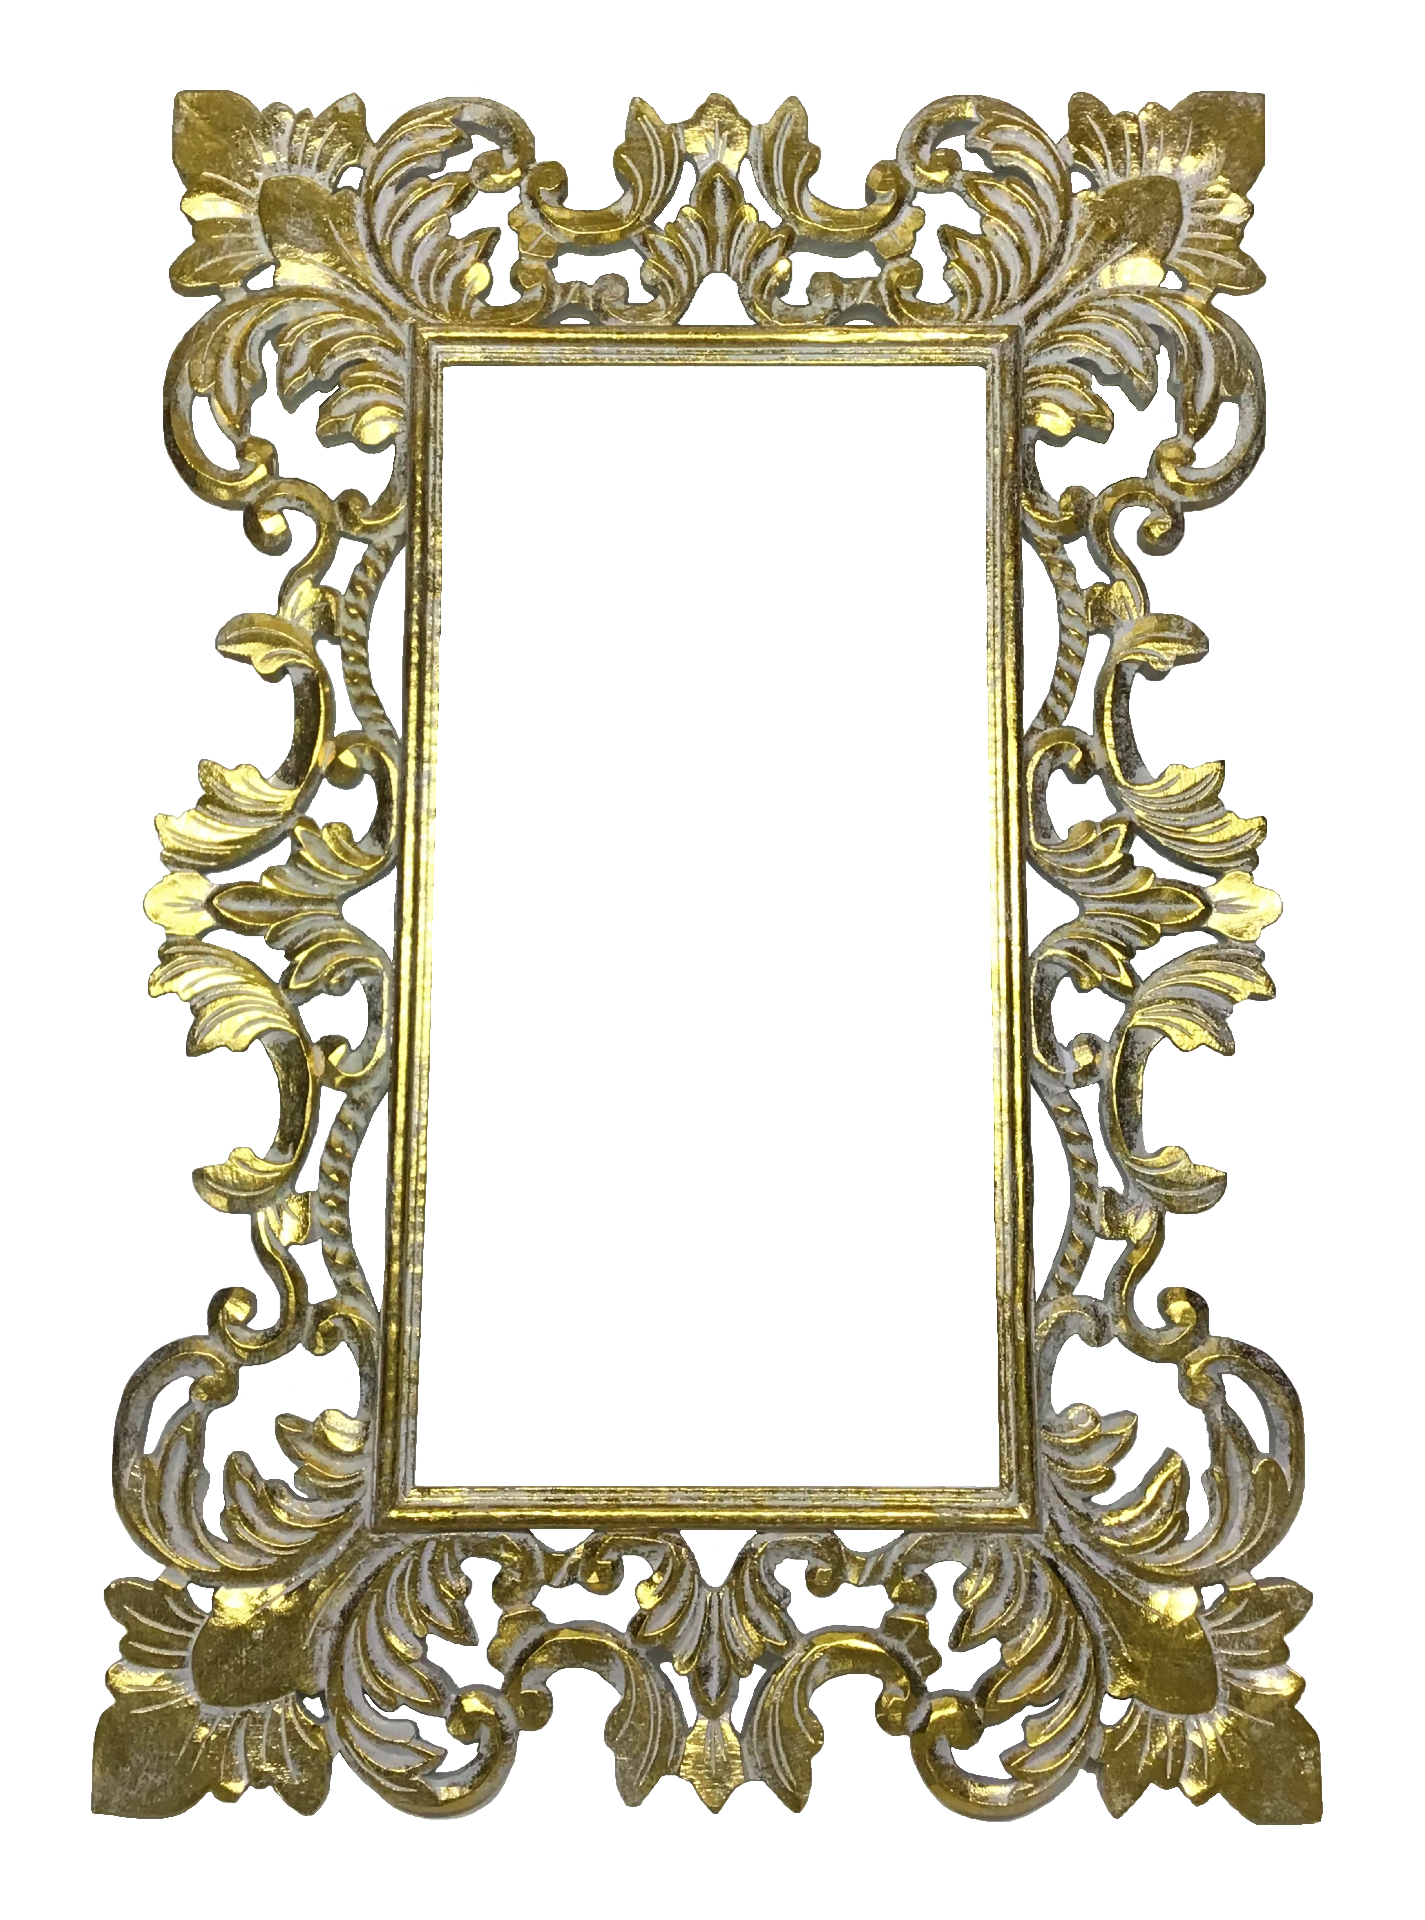 Marco de espejo tallado 60cm x 40cm